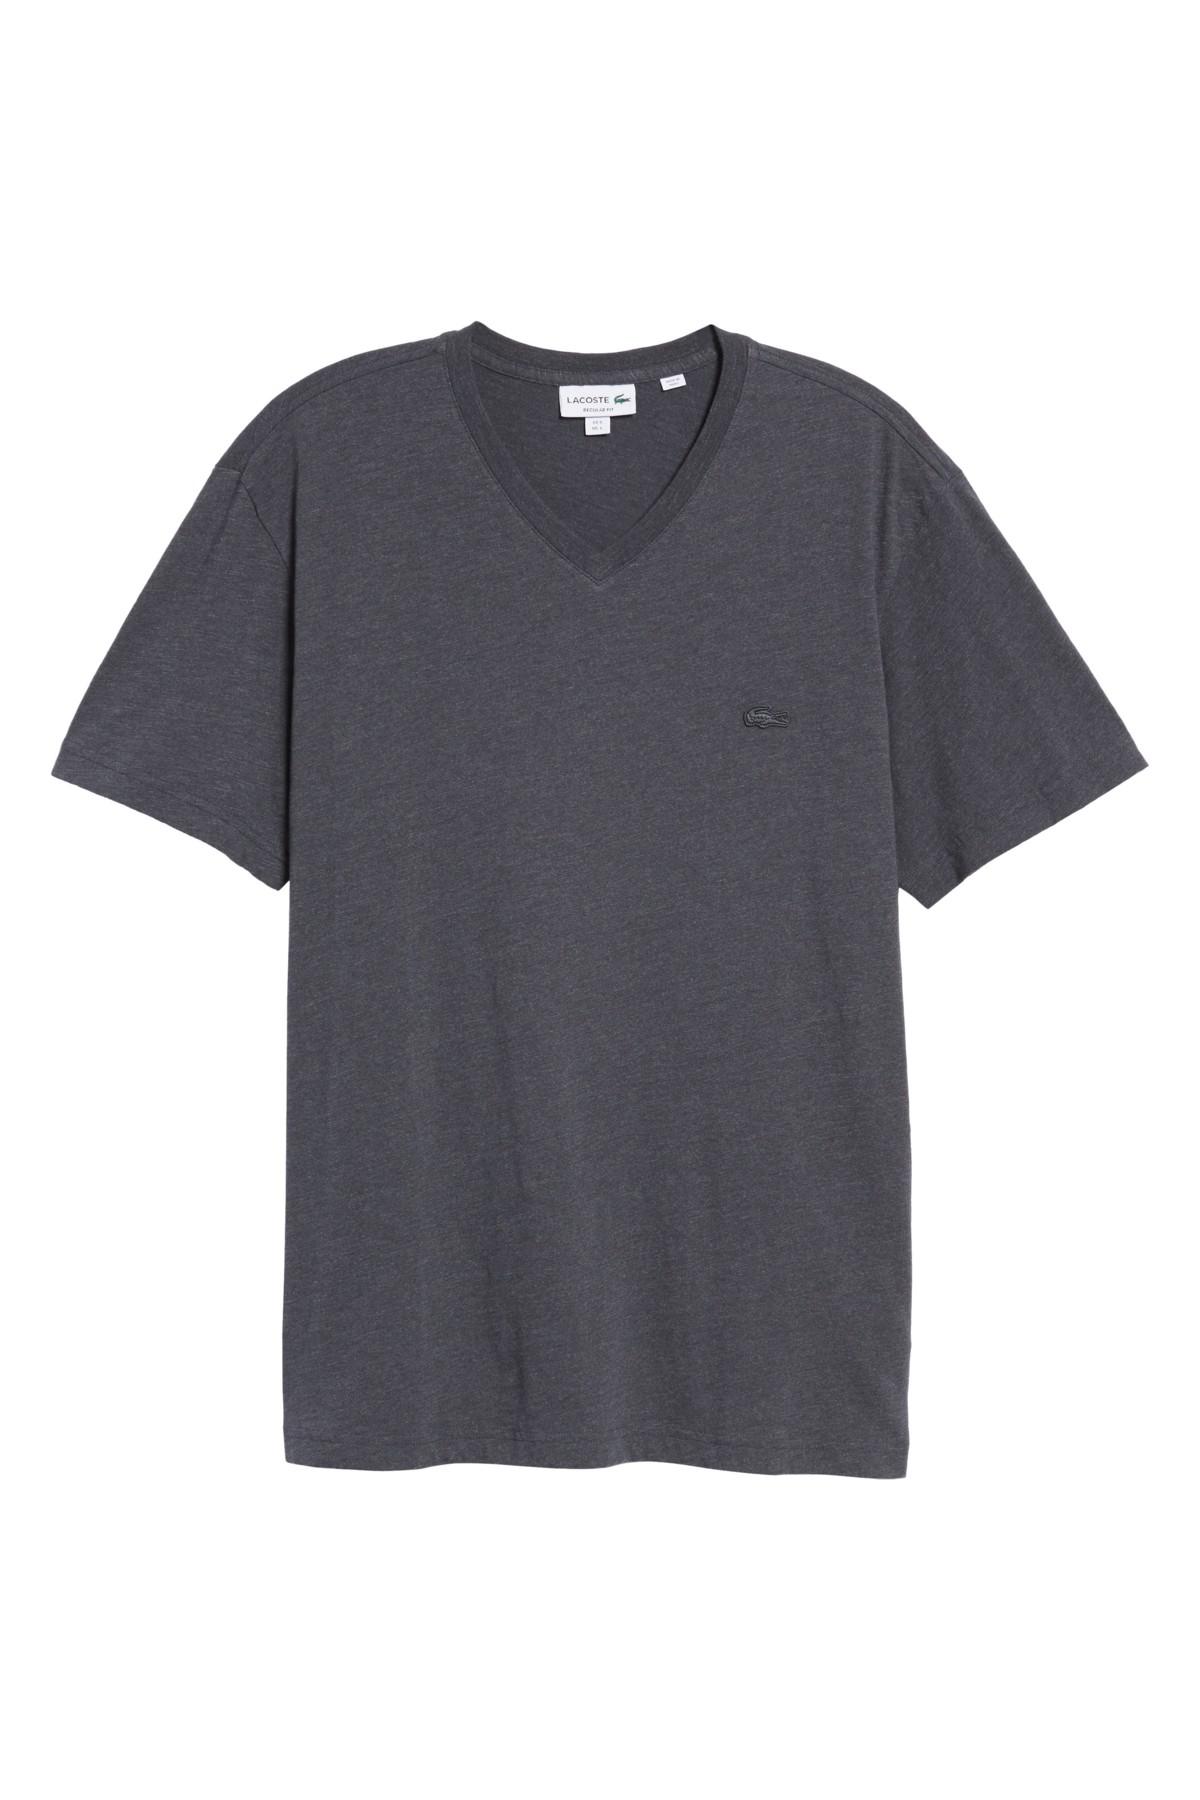 Lyst - Lacoste V-neck T-shirt in Gray for Men